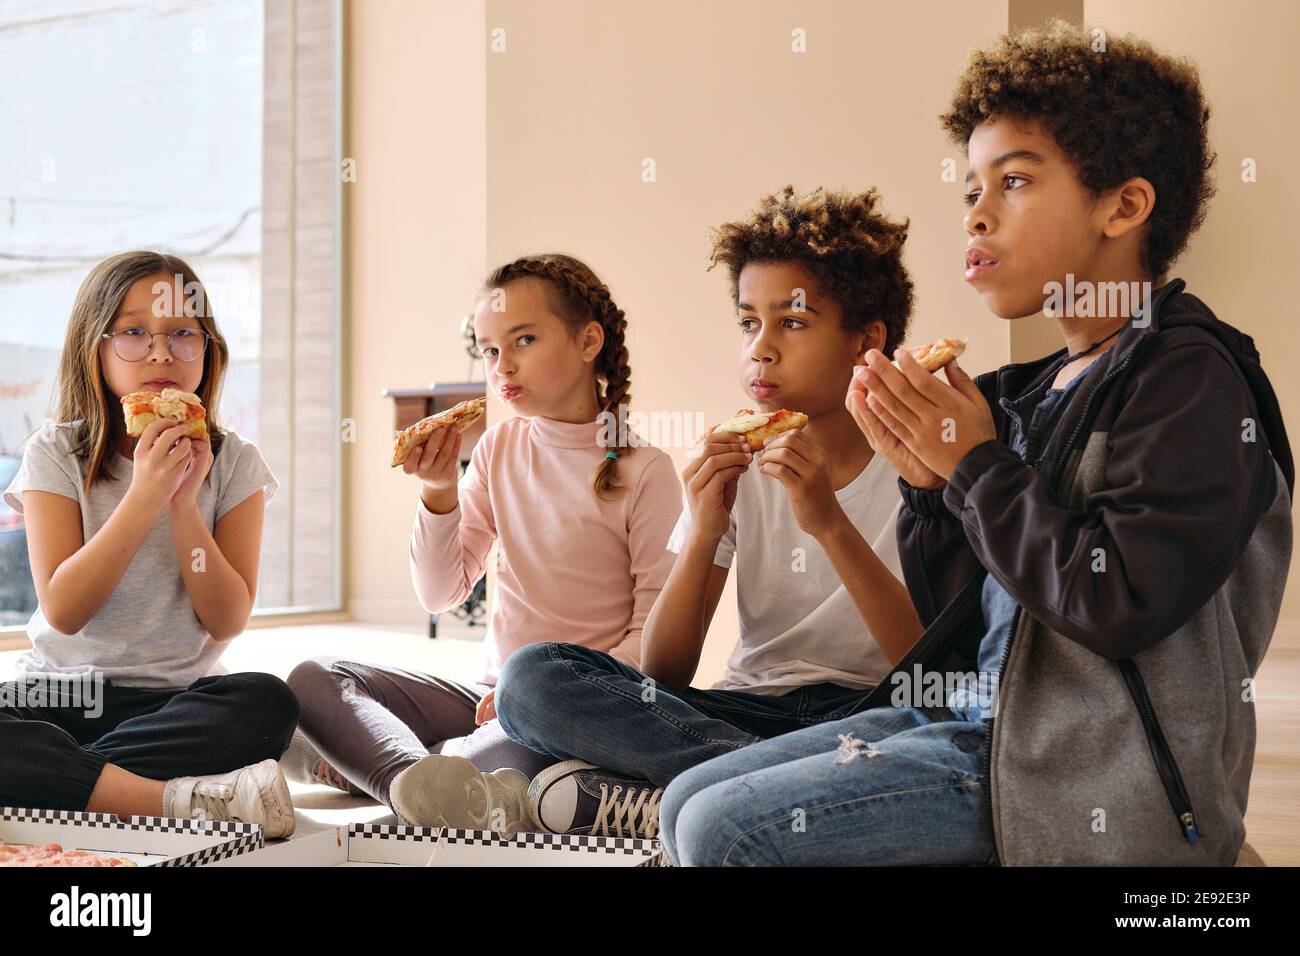 Gruppe von niedlichen multi Rasse Kinder kleine Jungen Mädchen sitzen  drinnen essen Pizza italienische Fast-Food-Küche. Alpha-Generierung teilt  Slices, verbringt Zeit miteinander Stockfotografie - Alamy